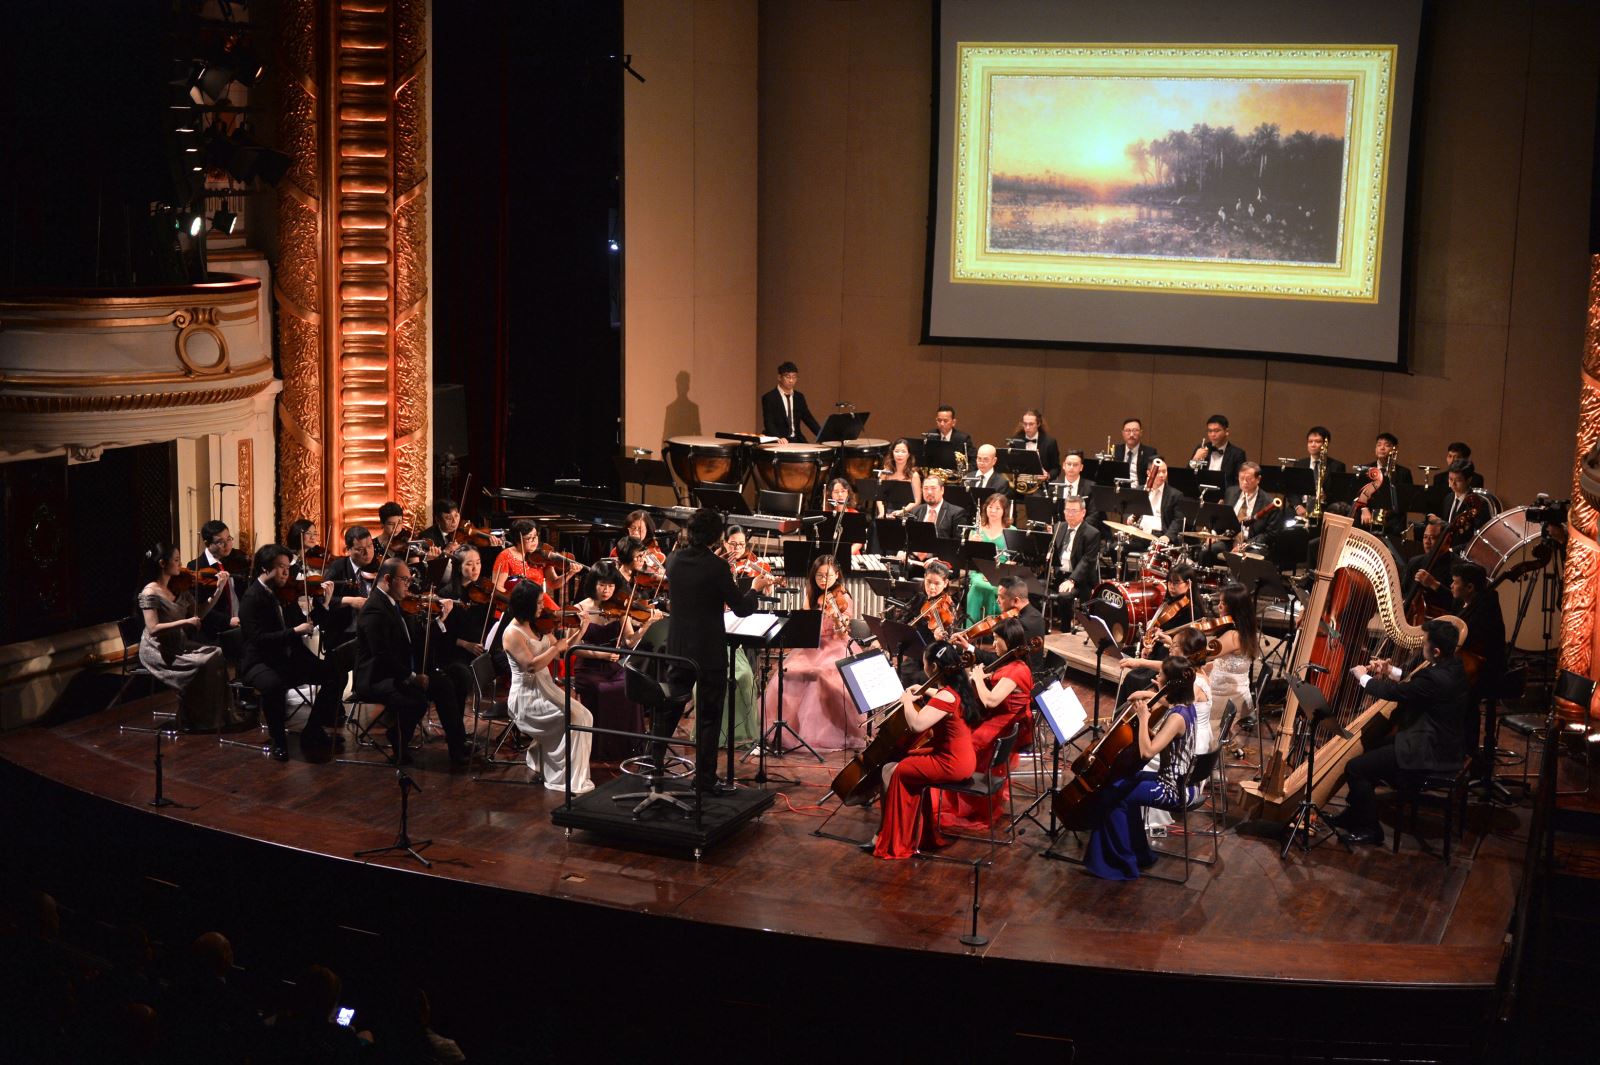 Hòa nhạc Valentine Concert: From Italy with love - kỷ niệm 50 năm thiết lập quan hệ ngoại giao Việt Nam và Italy